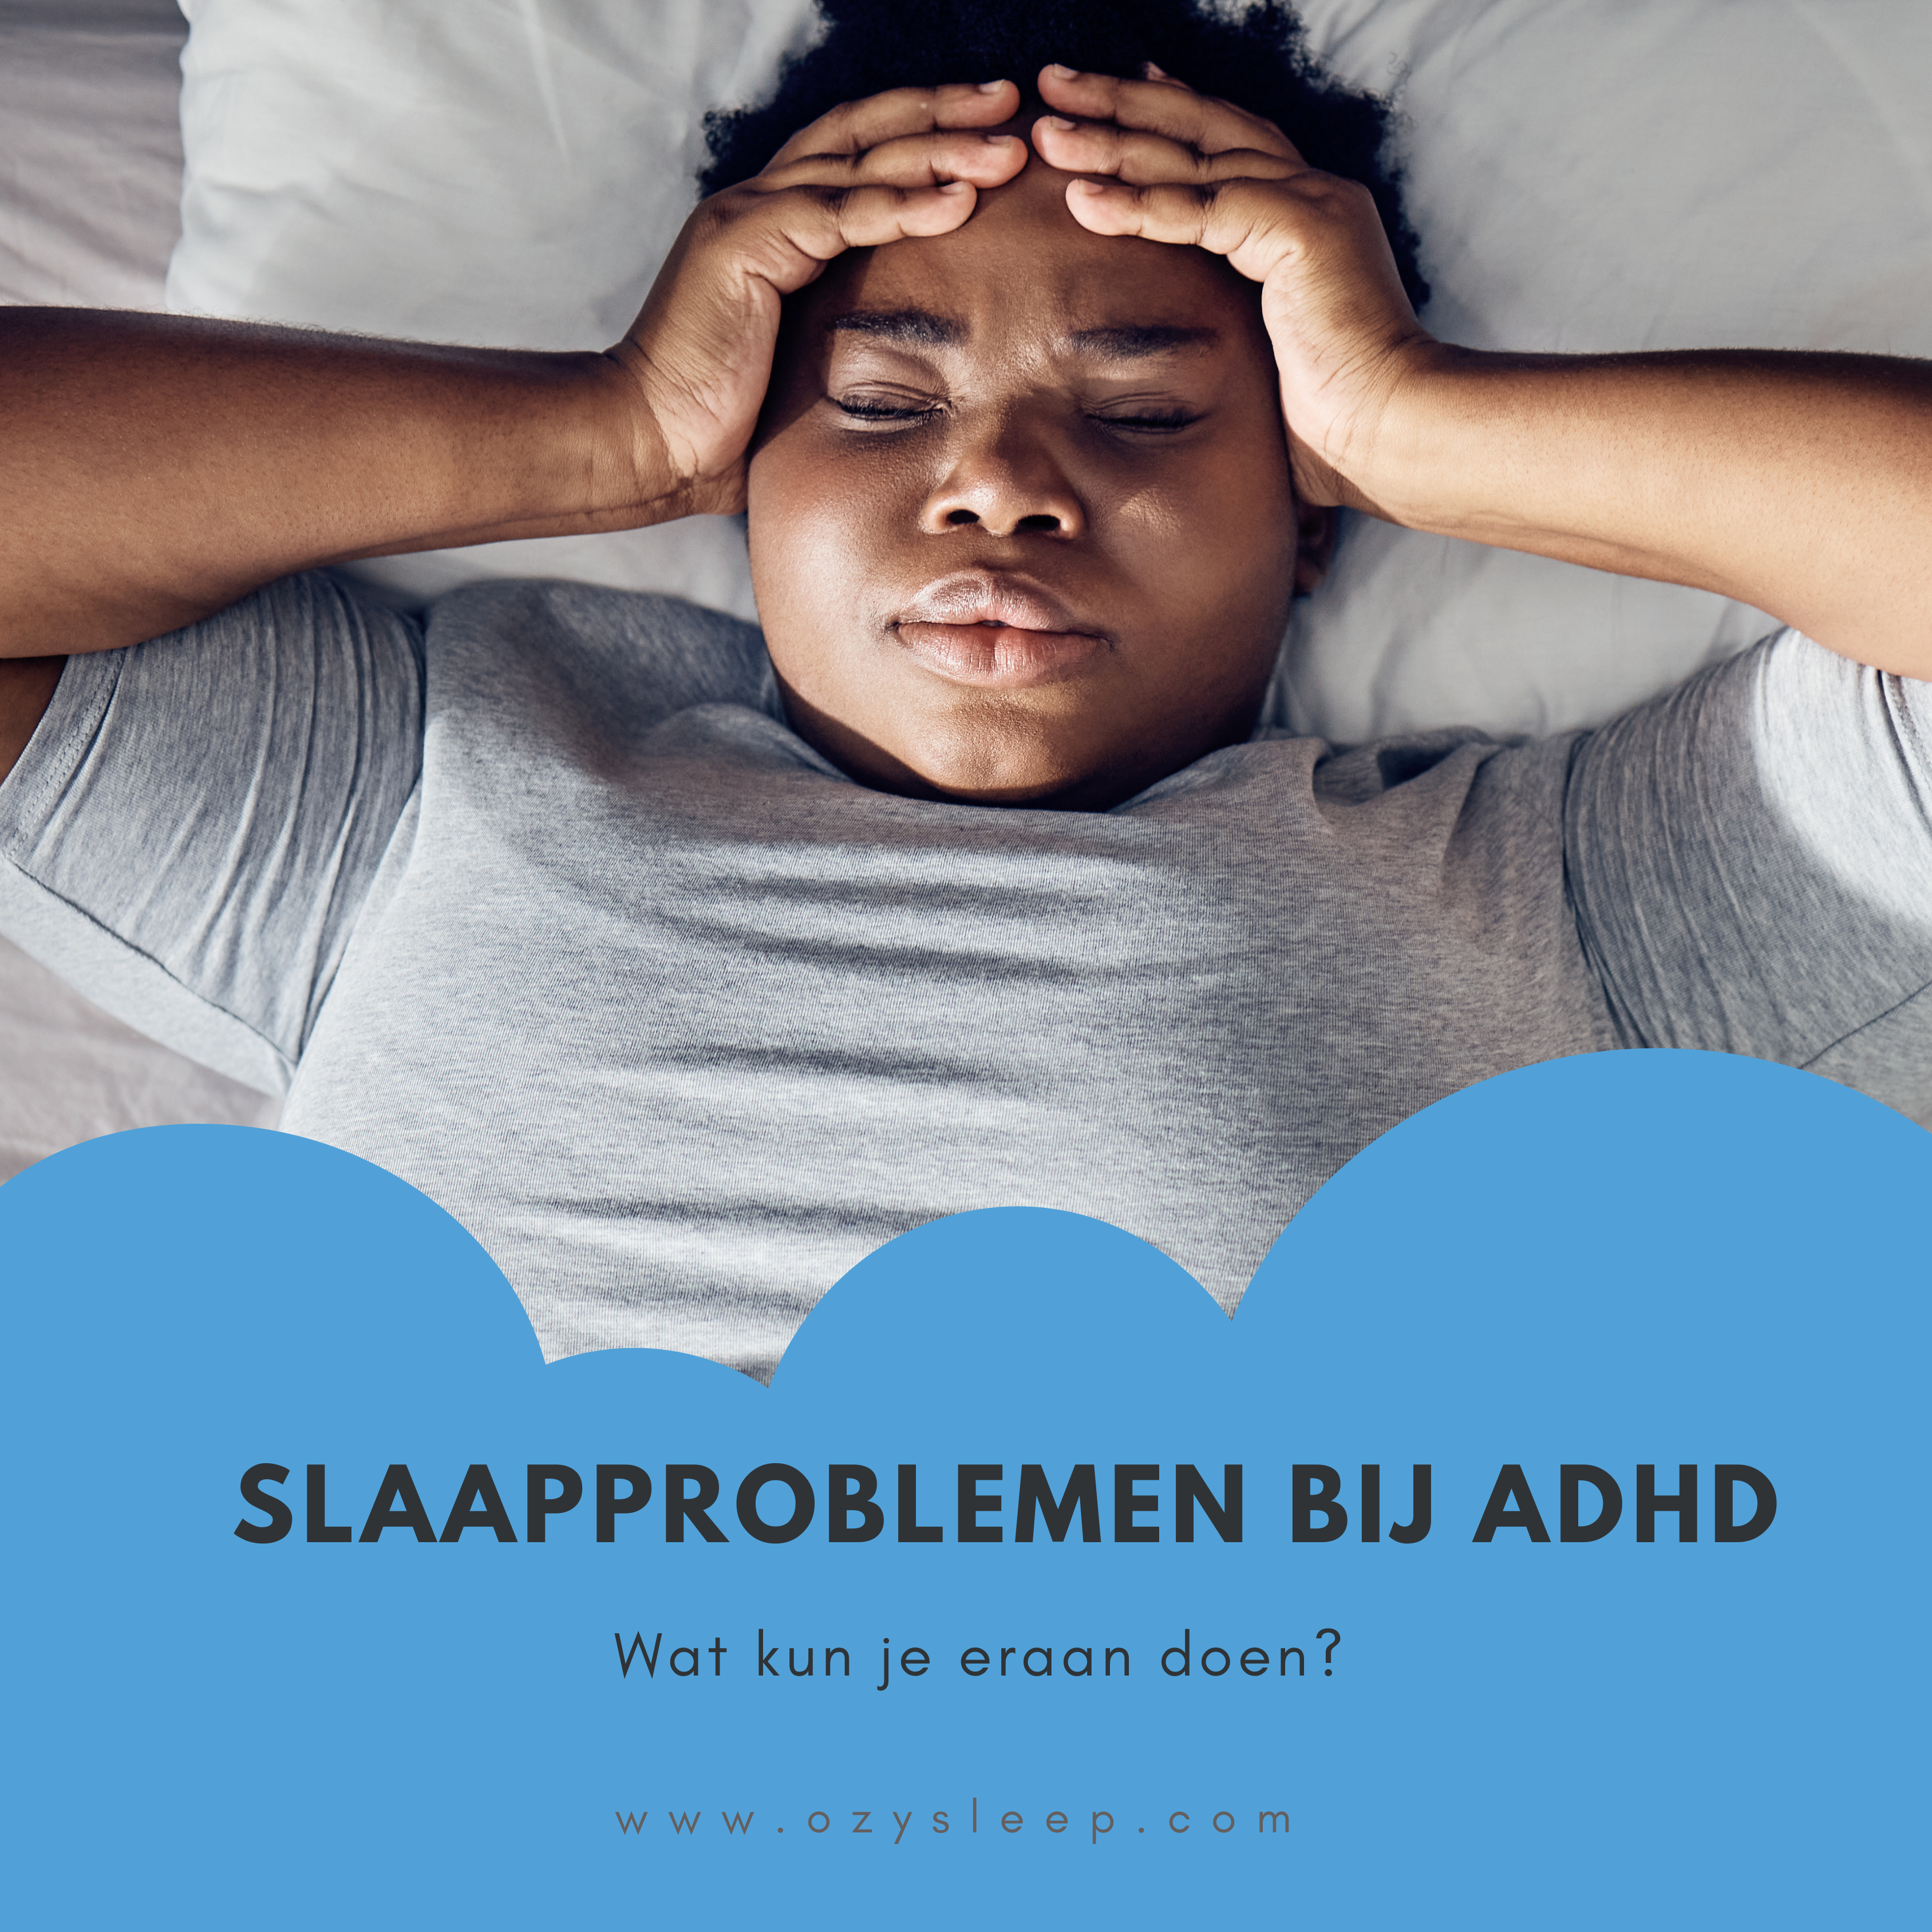 Slaapproblemen bij ADHD: Wat kun je eraan doen?